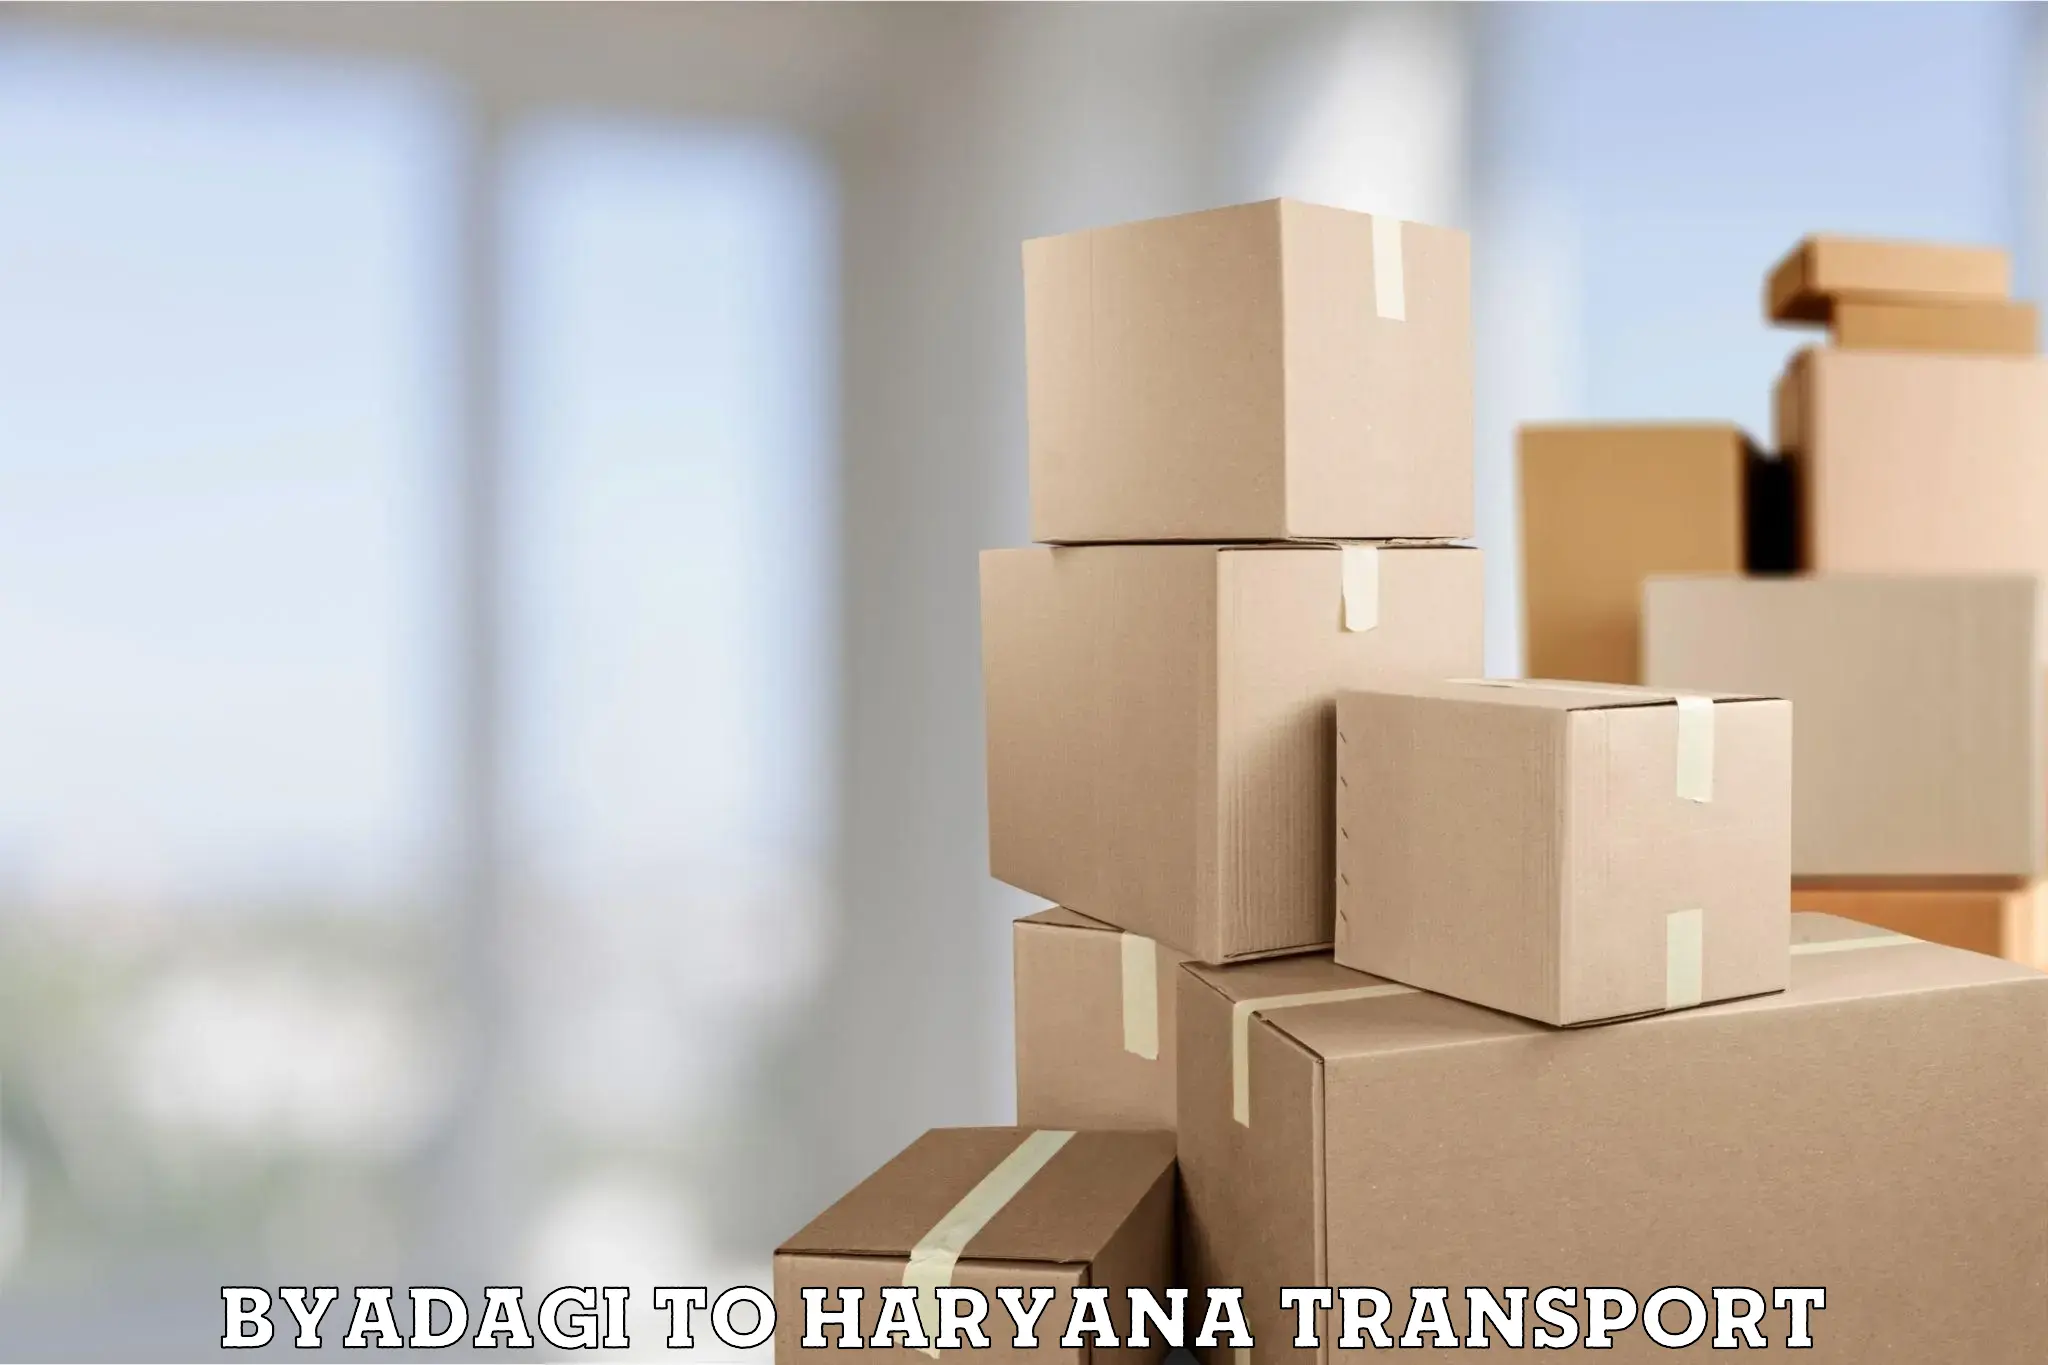 Daily transport service Byadagi to Haryana